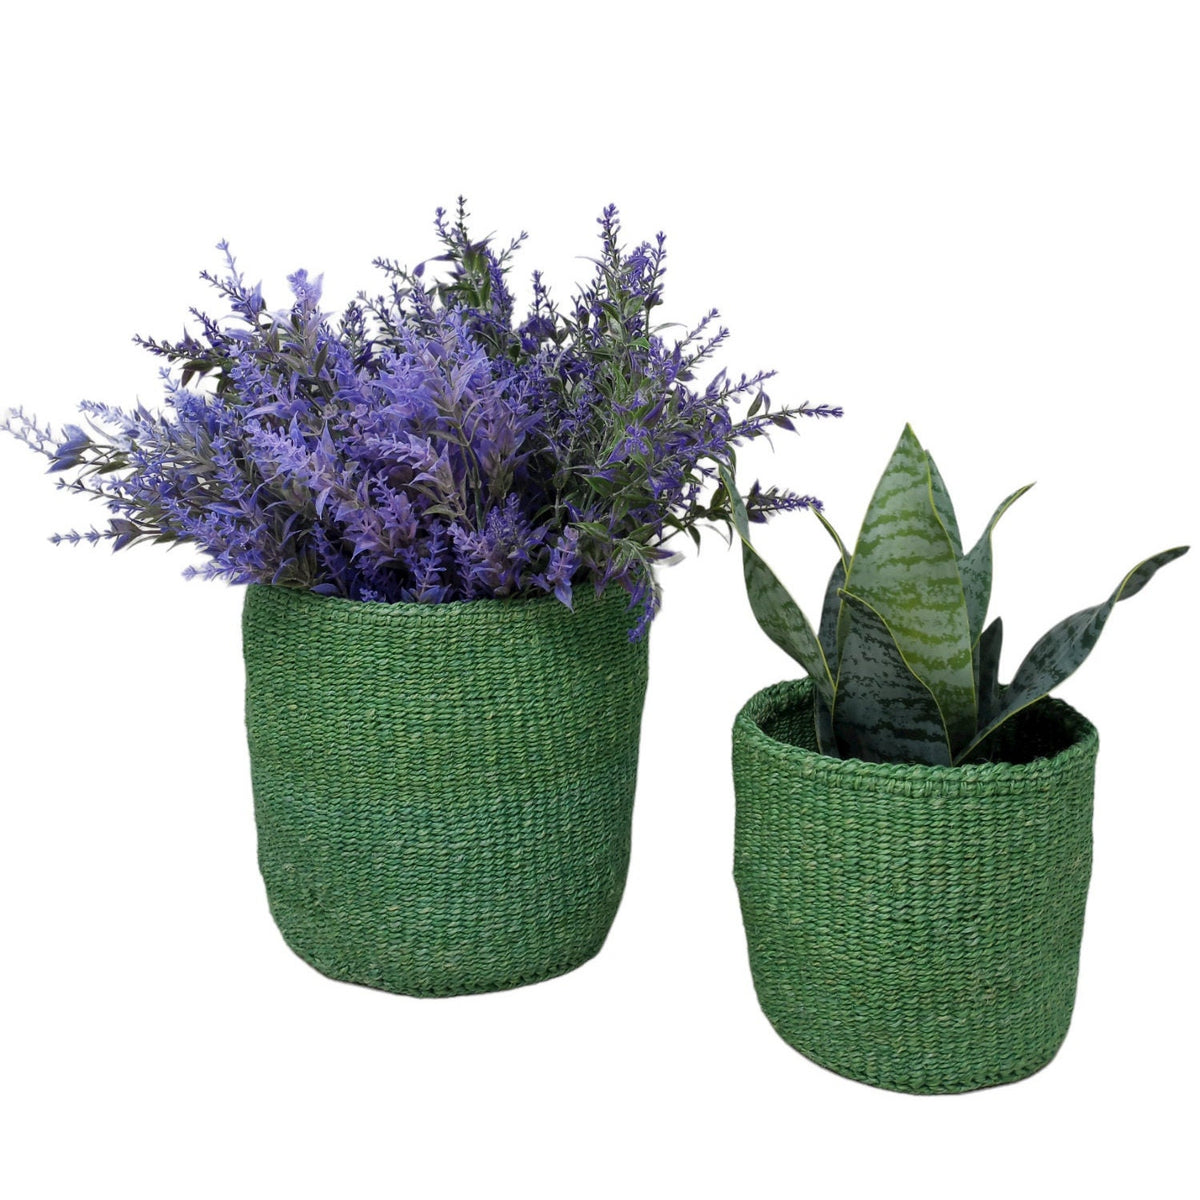 Set of 2 planter baskets, woven basket set, Plant basket, Plant pot cover, basket planter, woven planter, storage basket, African baskets